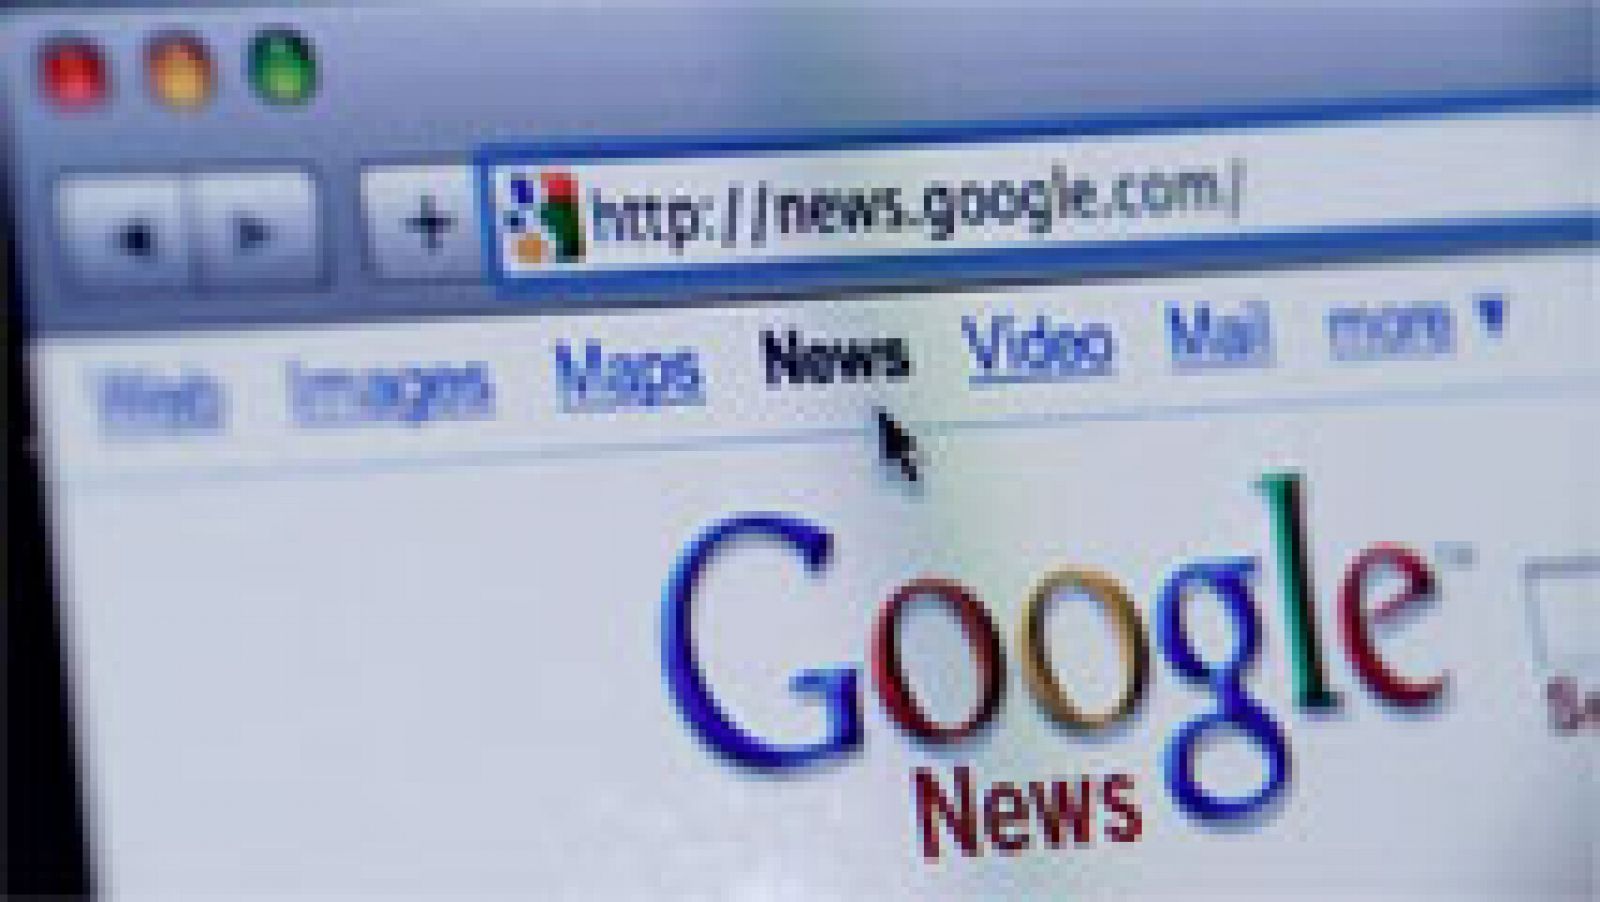 Google hace efectivo el cierre de Google News en España